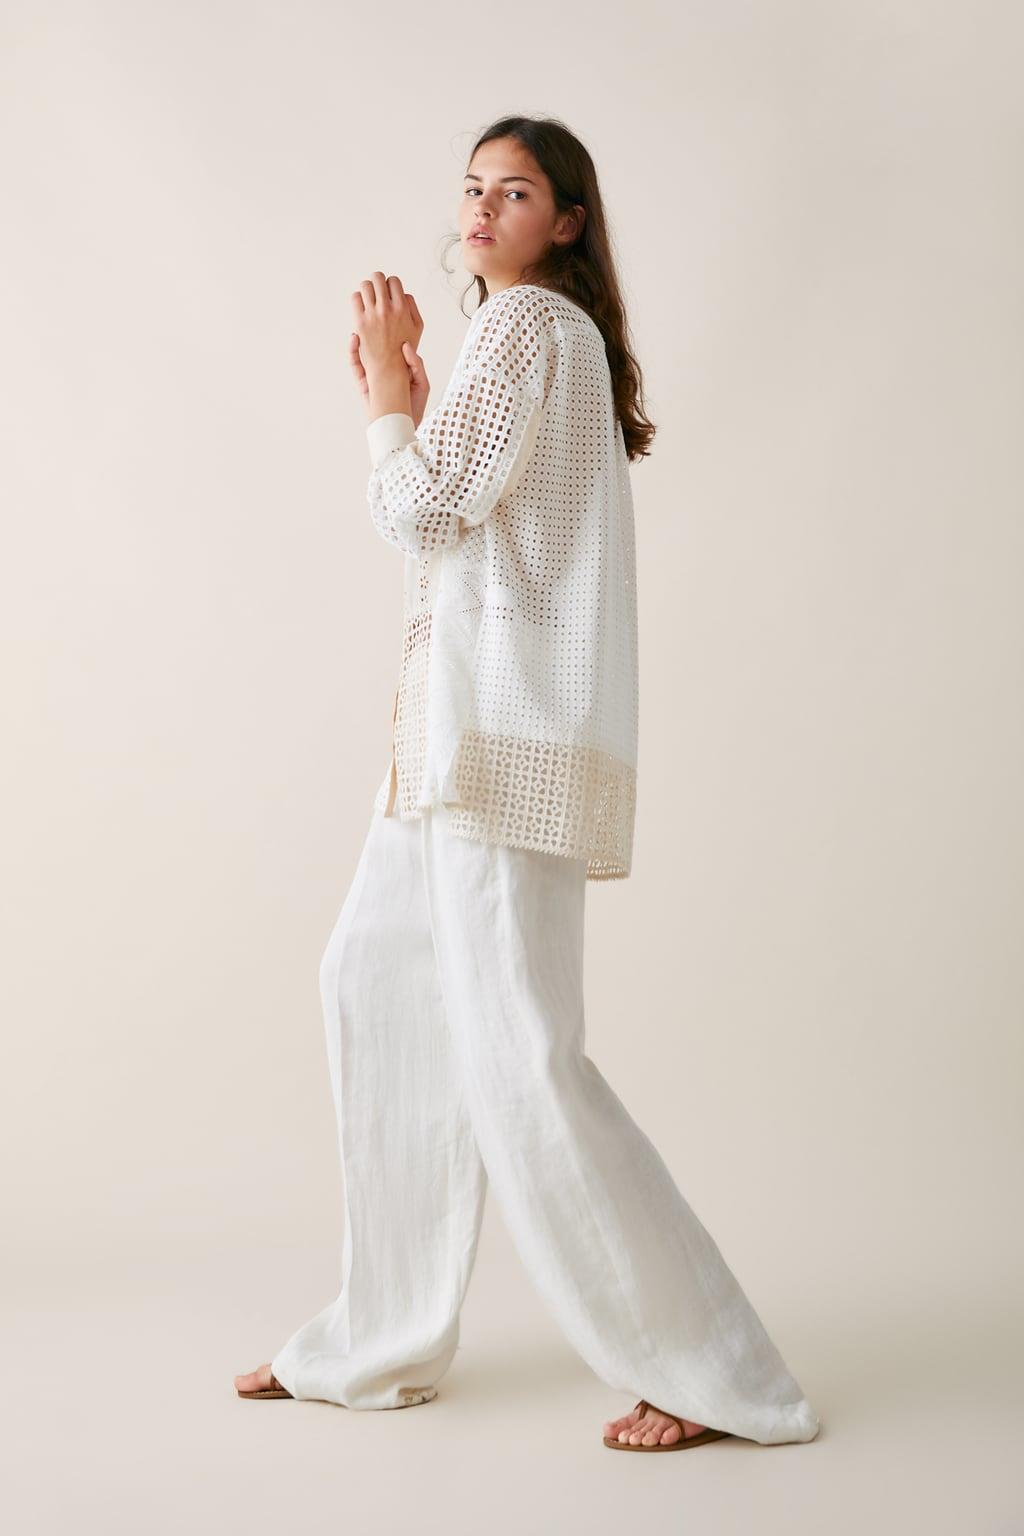 Dólar Peave papi Zara mujer camisas: camisas blancas mujer zara moda primavera verano 2019